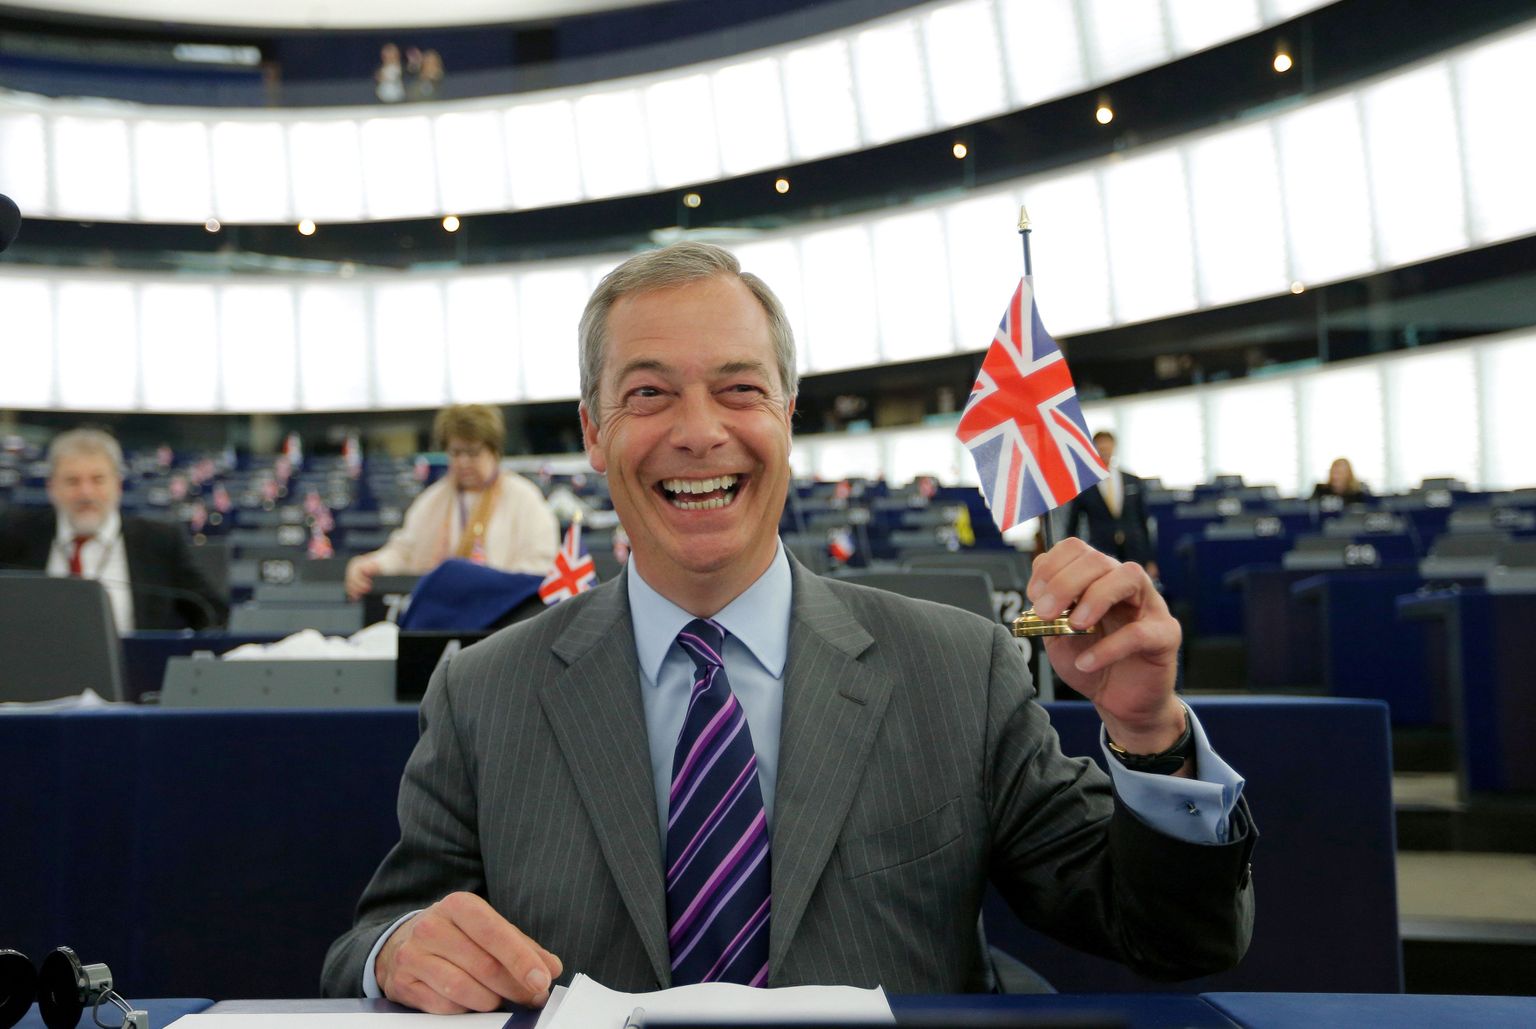 Nigel Farage on Euroopa Parlamendi saadikuna töötanud alates 1999. aastast. Liberaalist eurosaadiku Guy Verhofstadti hinnangul on Farage´ile 17 aasta jooksul makstud palk olnud ELi suurim raharaisk.